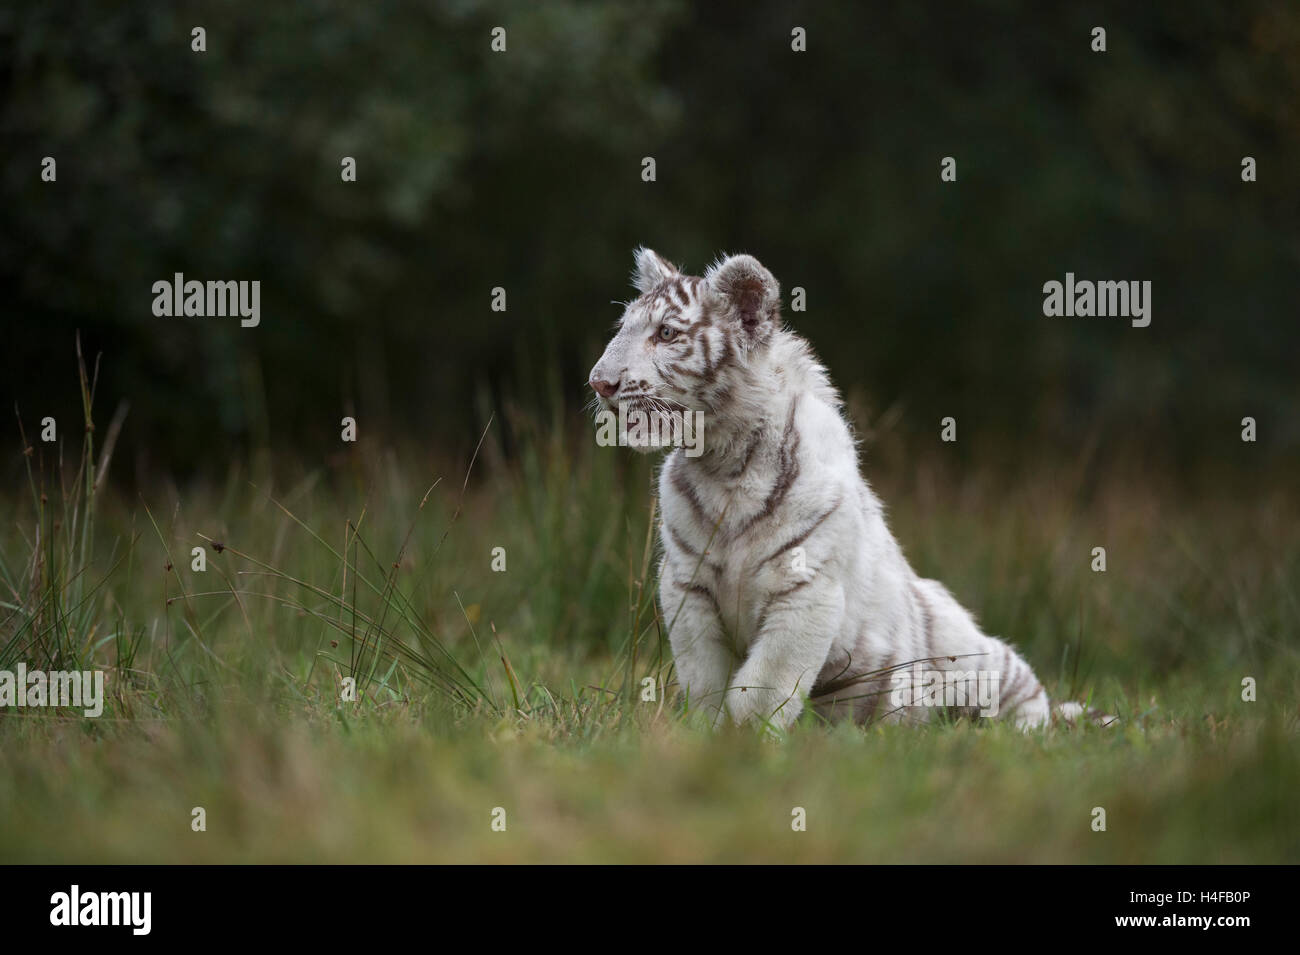 Royal tigre del Bengala ( Panthera tigris ), bianco morph, seduta in erba, su una piccola radura, vicino al bordo di una foresta. Foto Stock